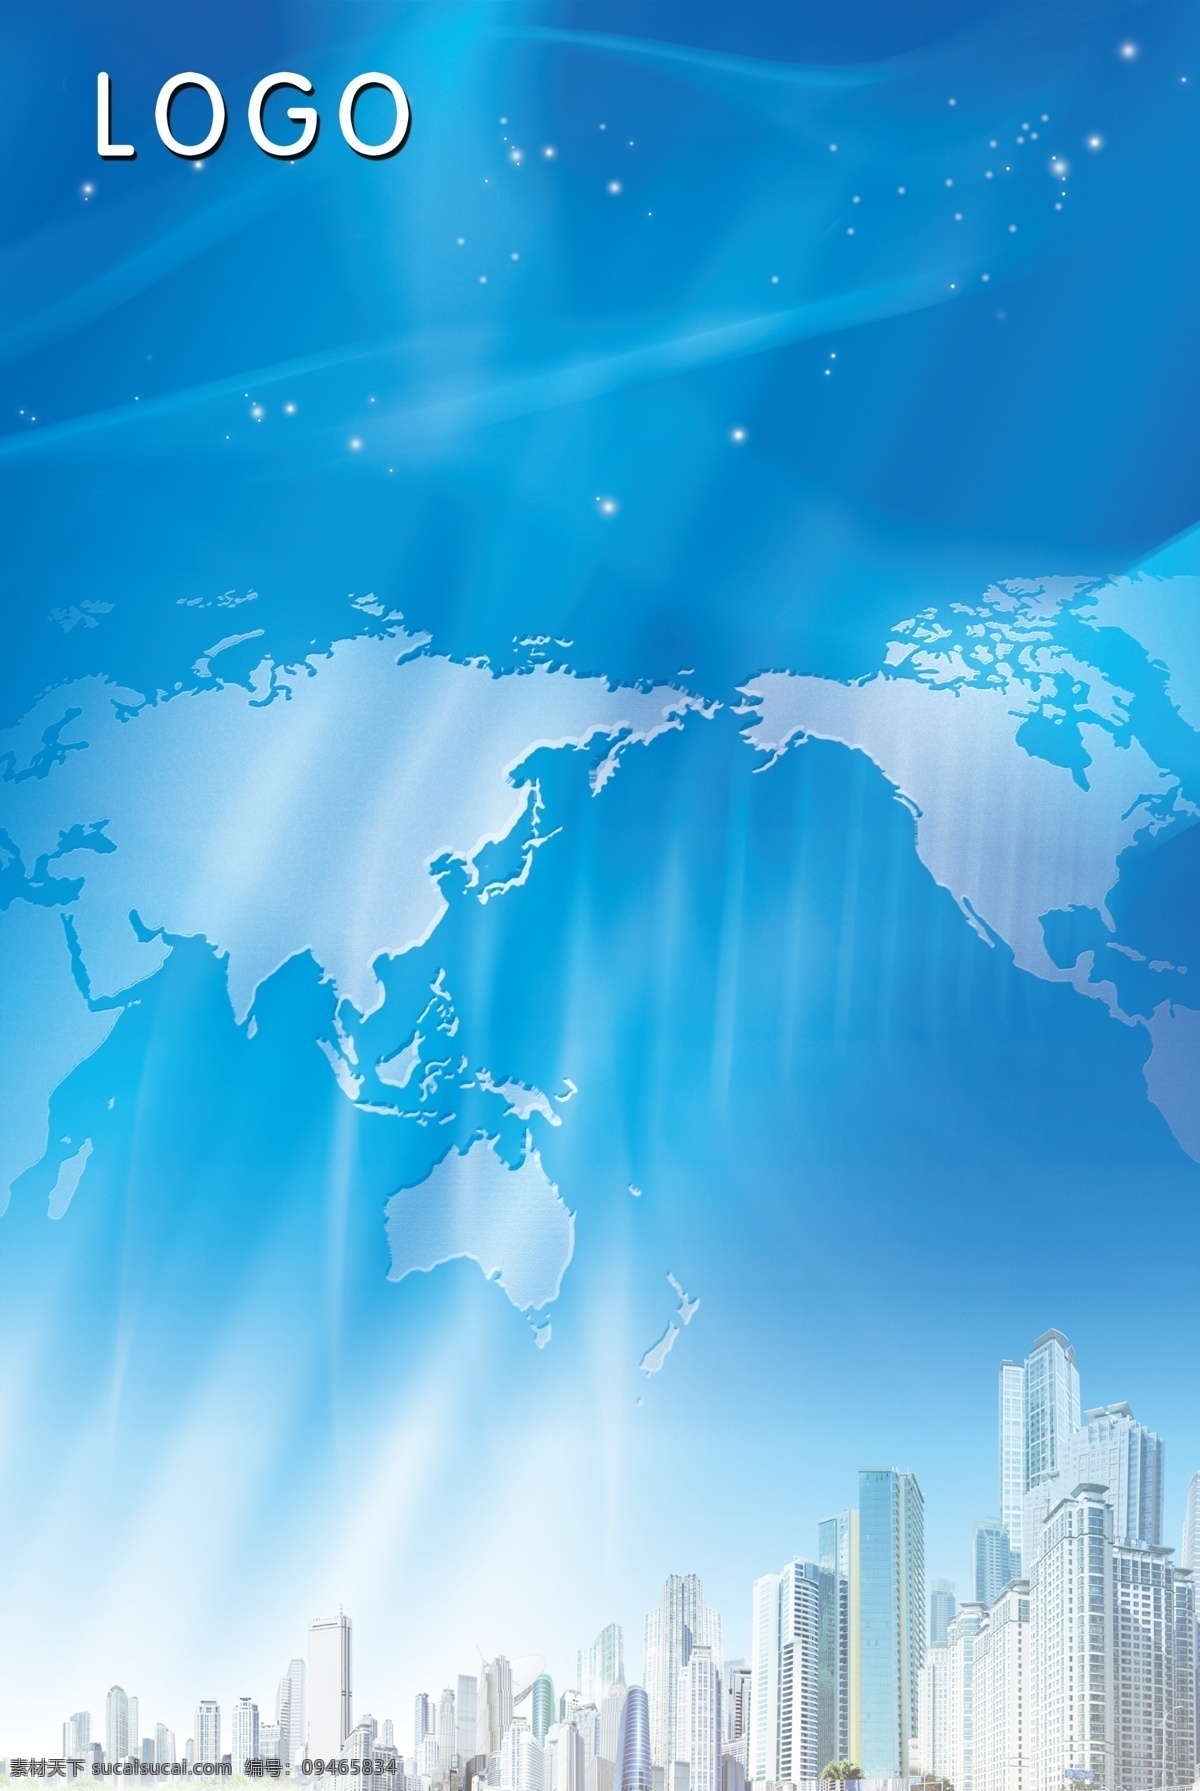 科技 信息 模板 城市 高楼 光元素素材 科技信息模板 蓝色花纹背景 蓝色制度模板 地图版块 psd源文件